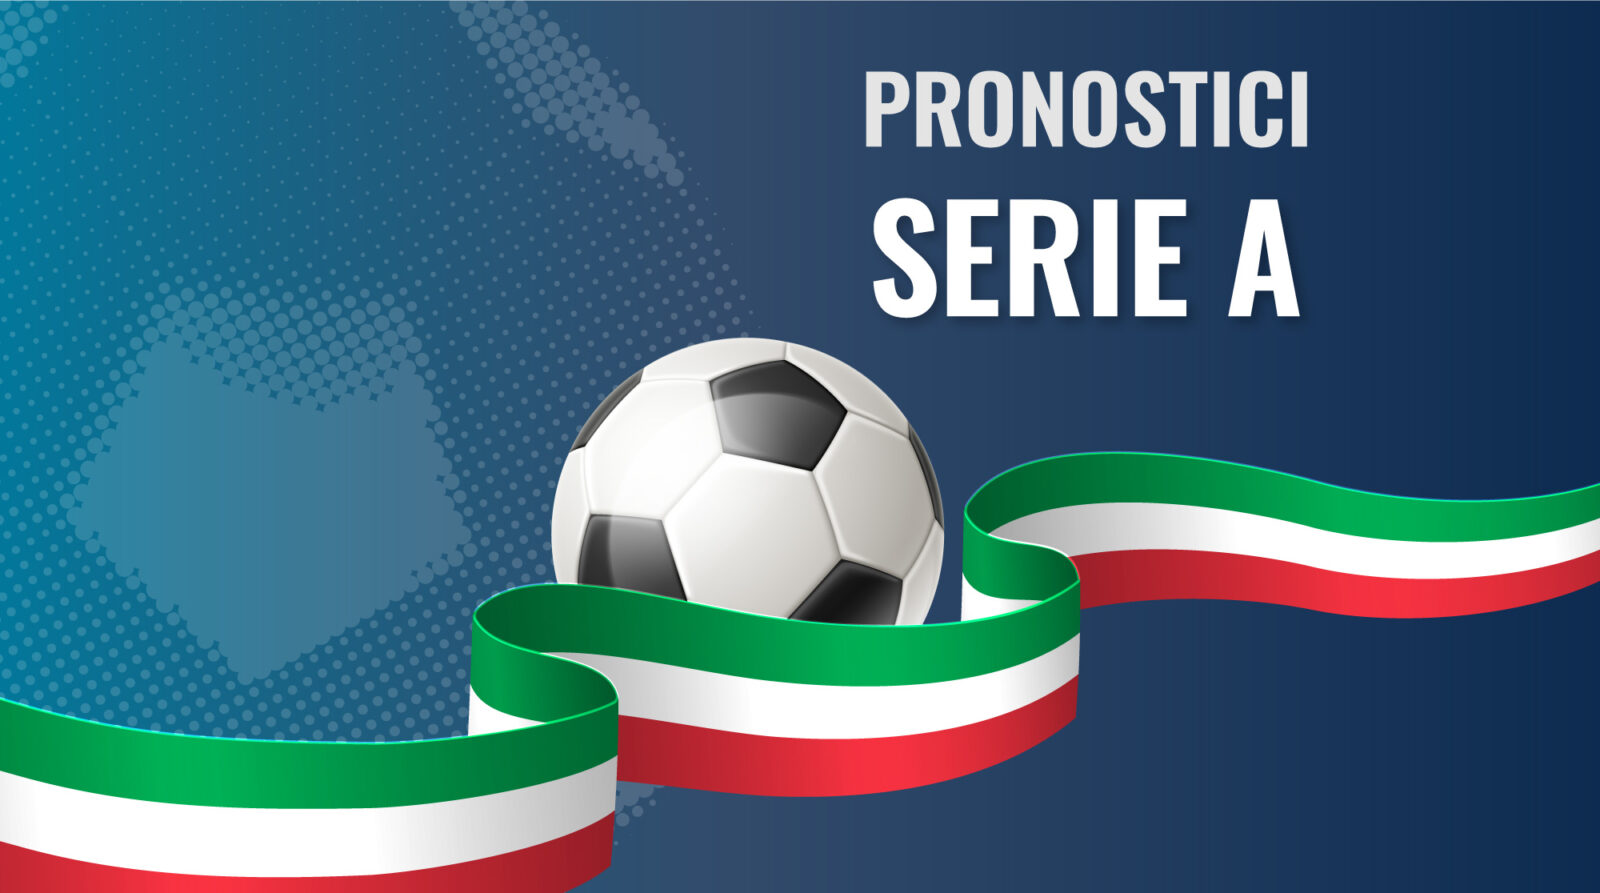 Pronostici - Serie A